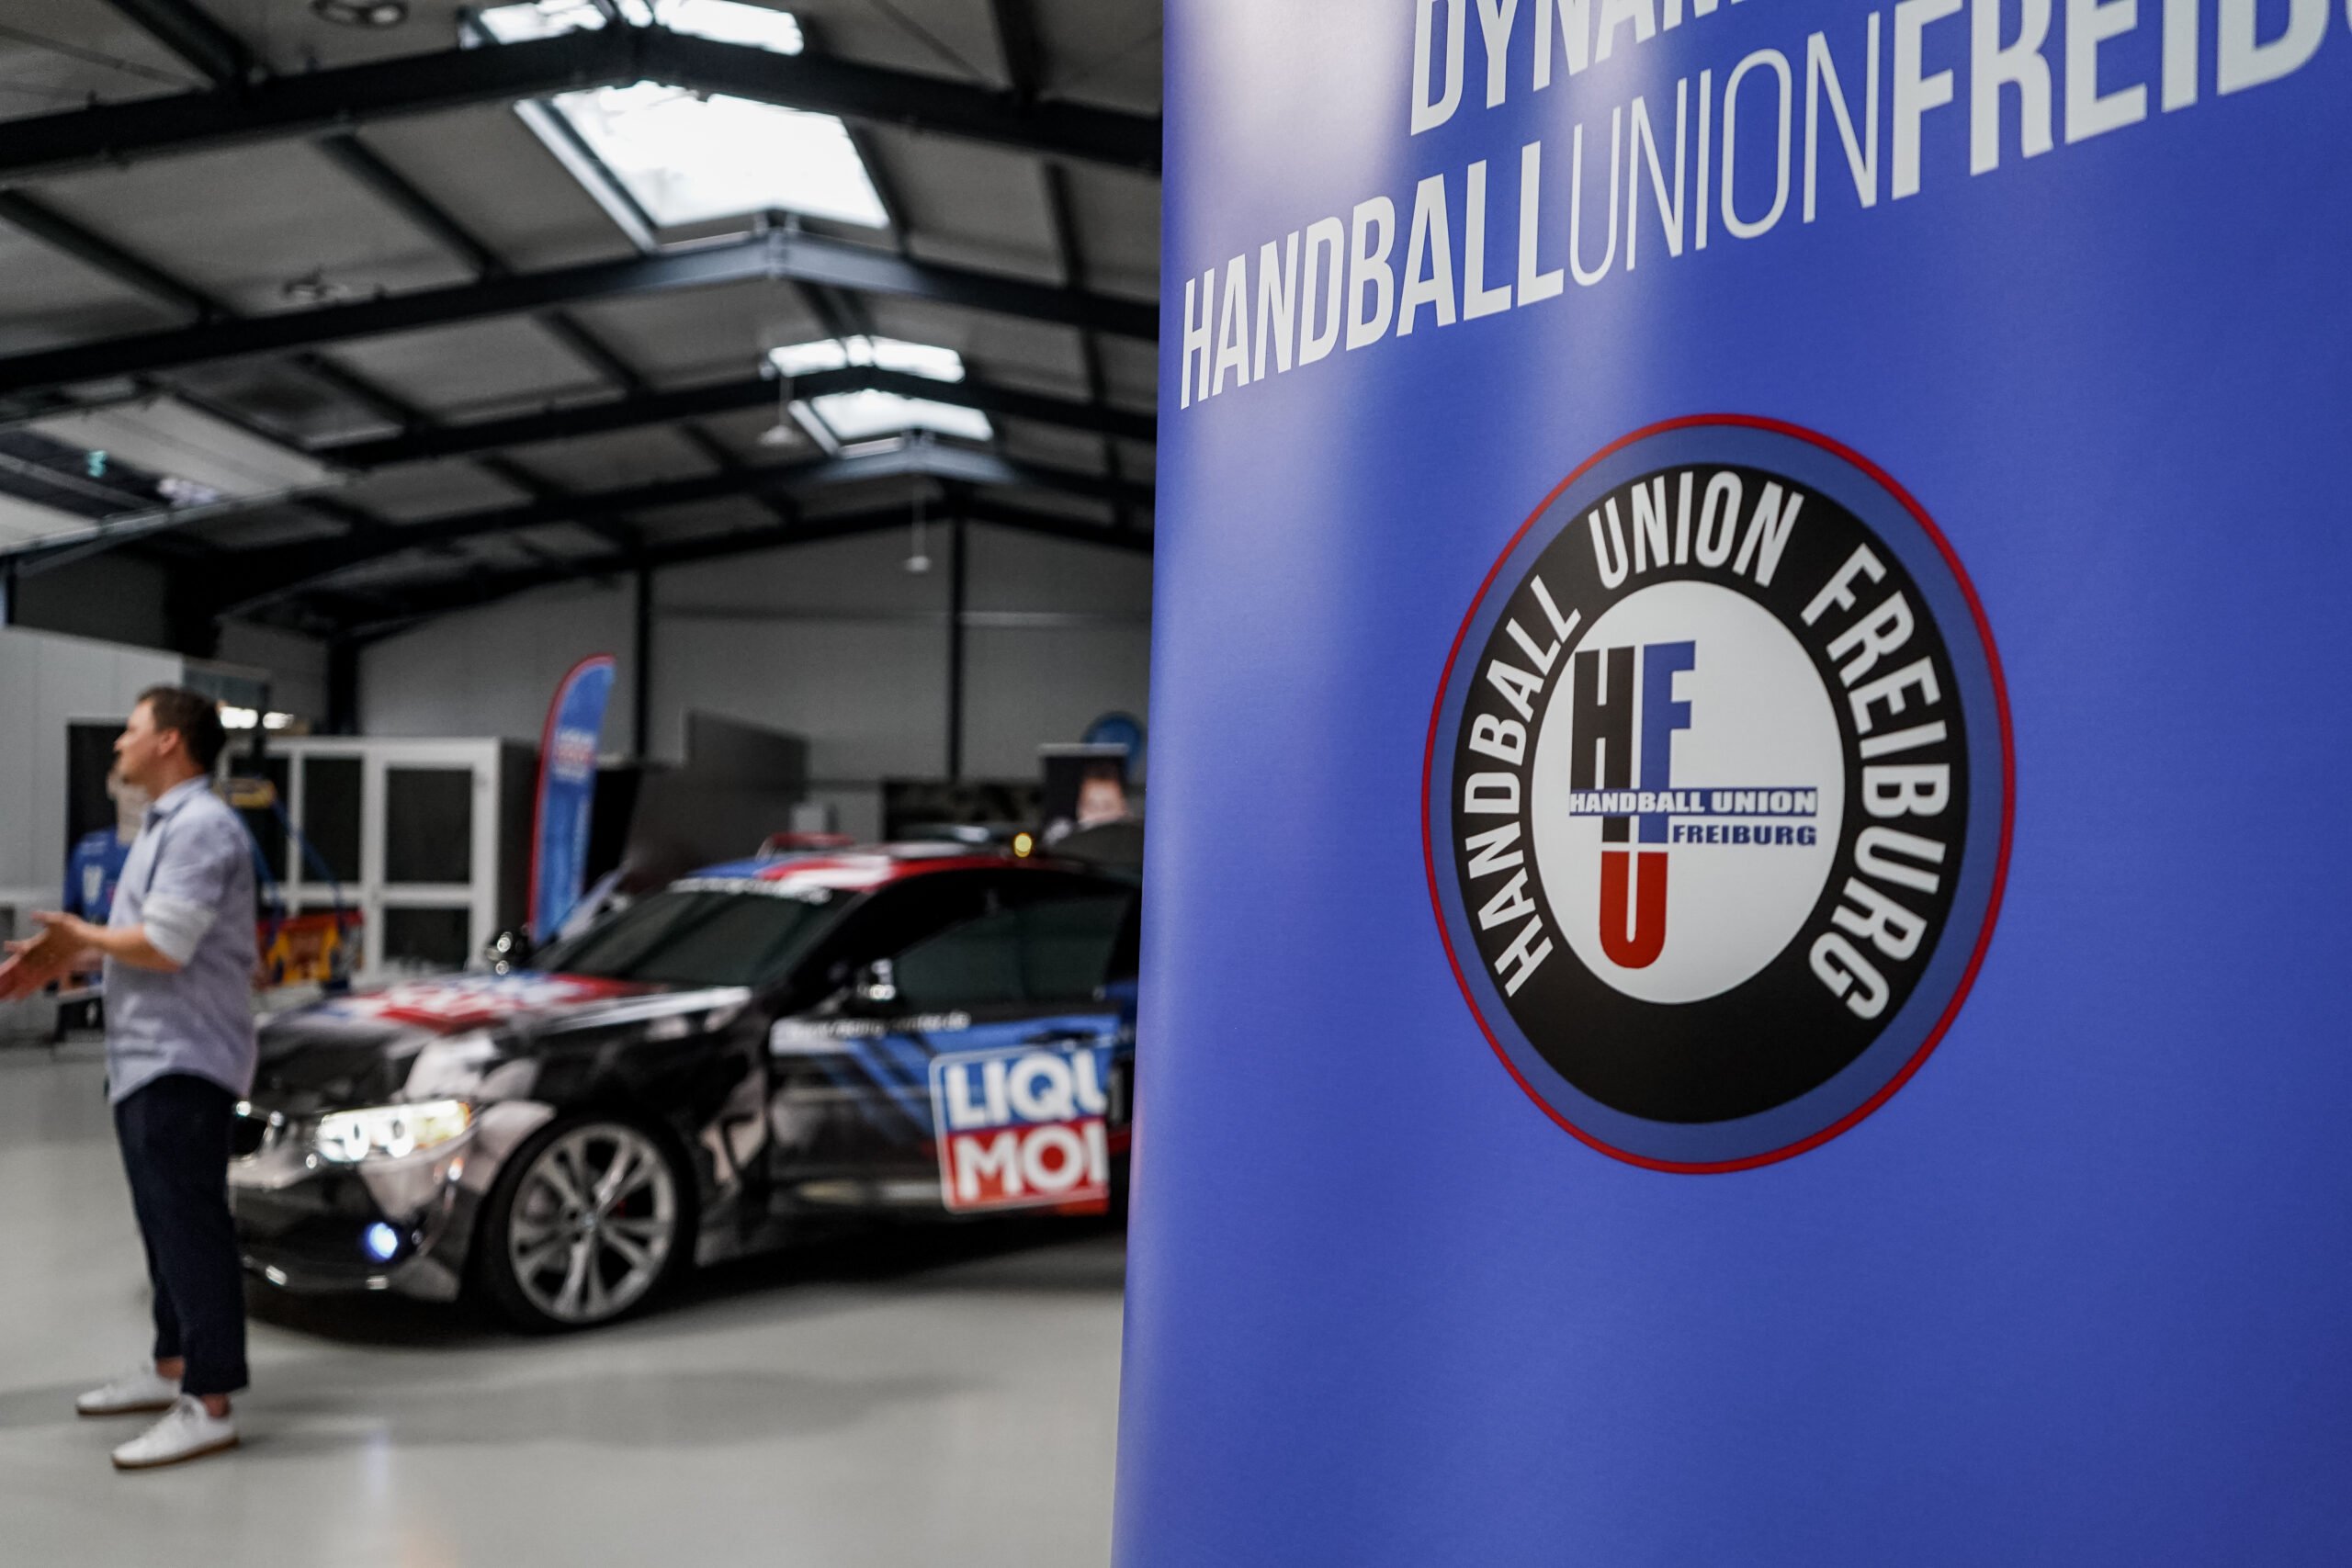 Sponsorentreffen der Handball Union Freiburg ein voller Erfolg